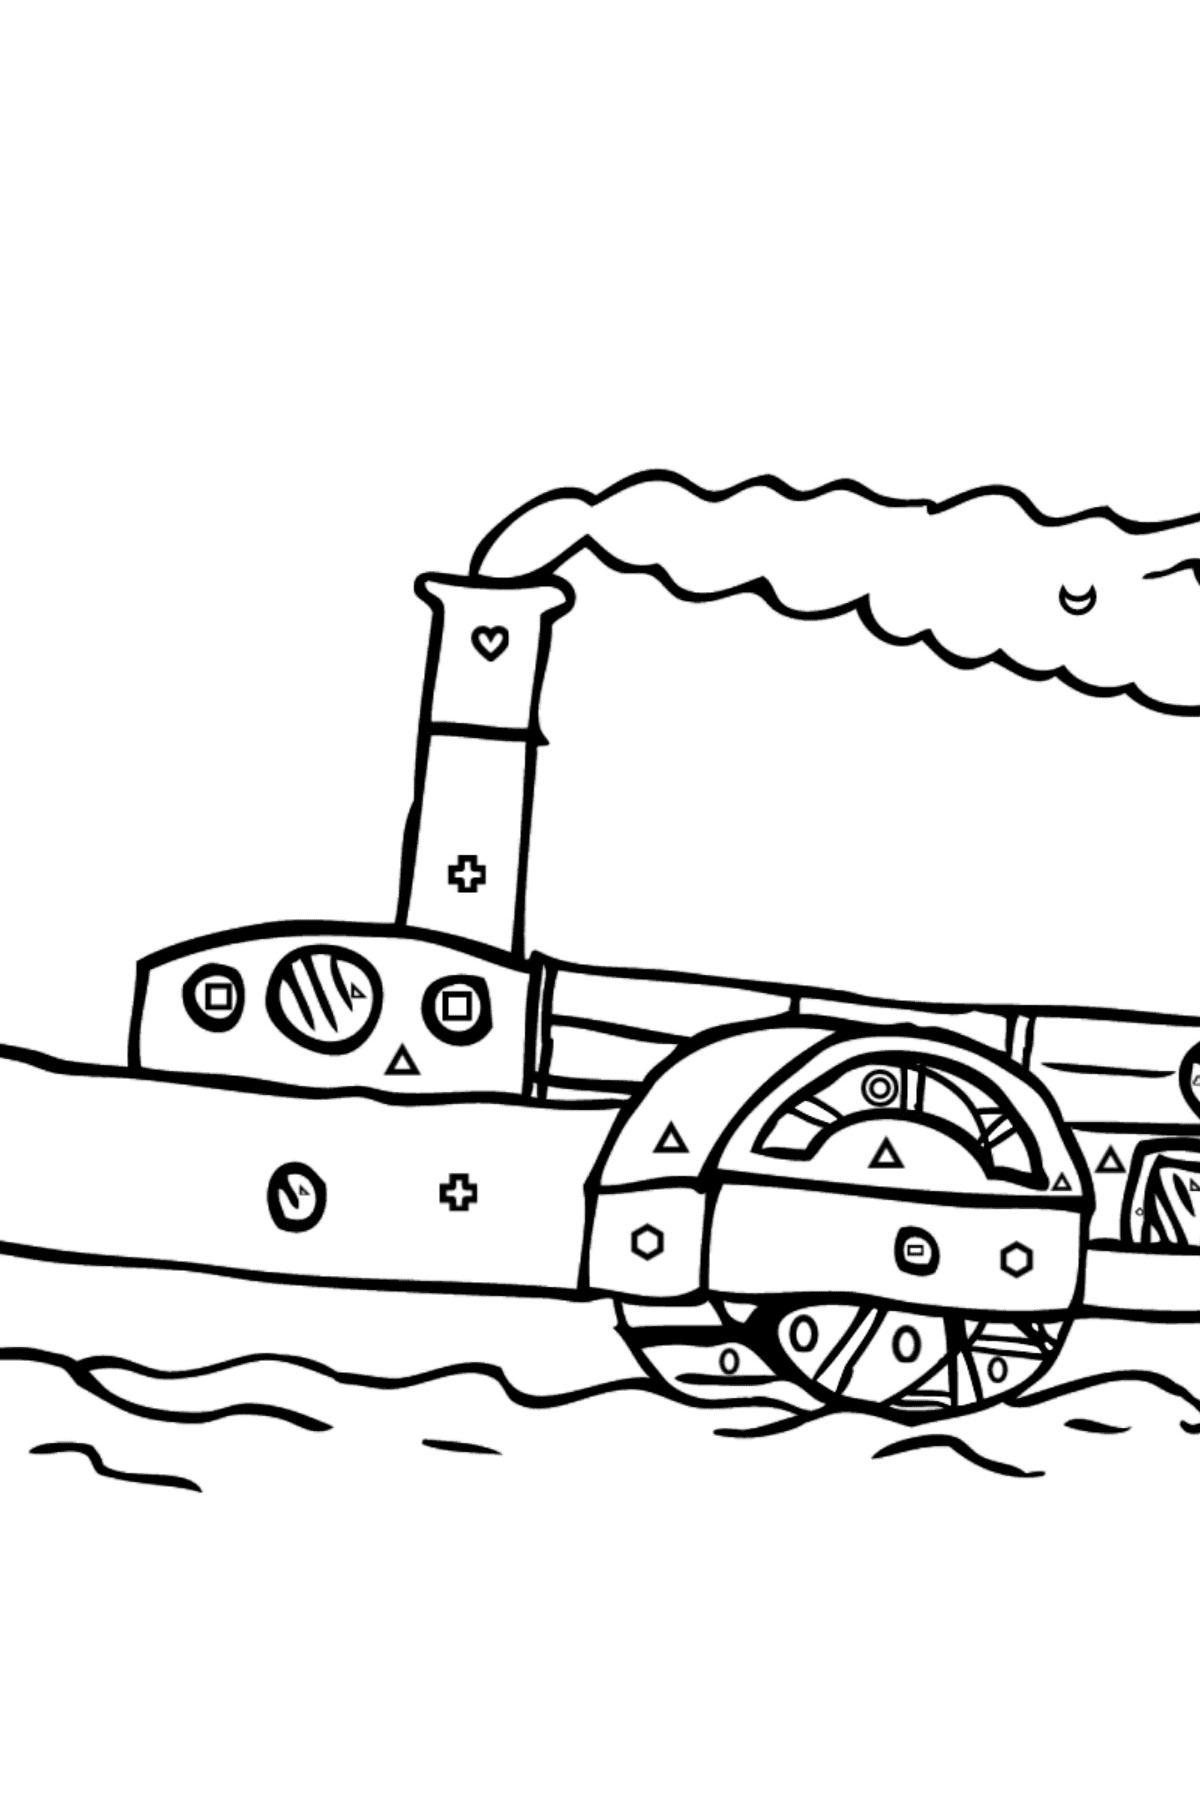 Раскраска Корабль с гребным колесом - Картинка высокого качества для Детей